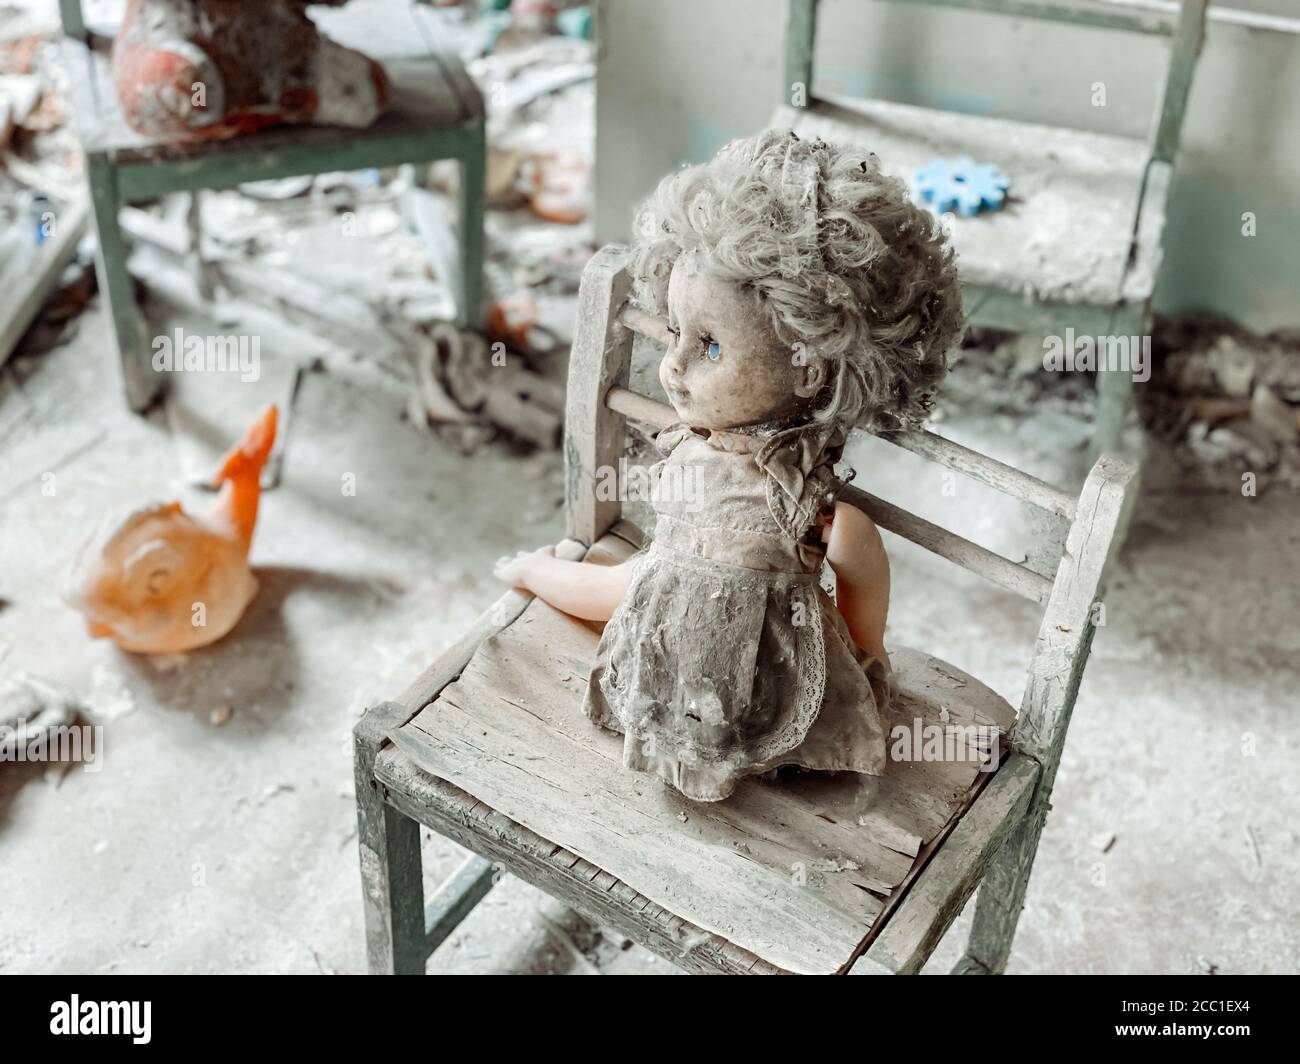 In den Ruinen eines verlassenen Hauses ist Kinderspielzeug mit Staub und Trümmern bedeckt. Verlassene und zerstörte Häuser nach dem Unfall in Tschernobyl nu Stockfoto